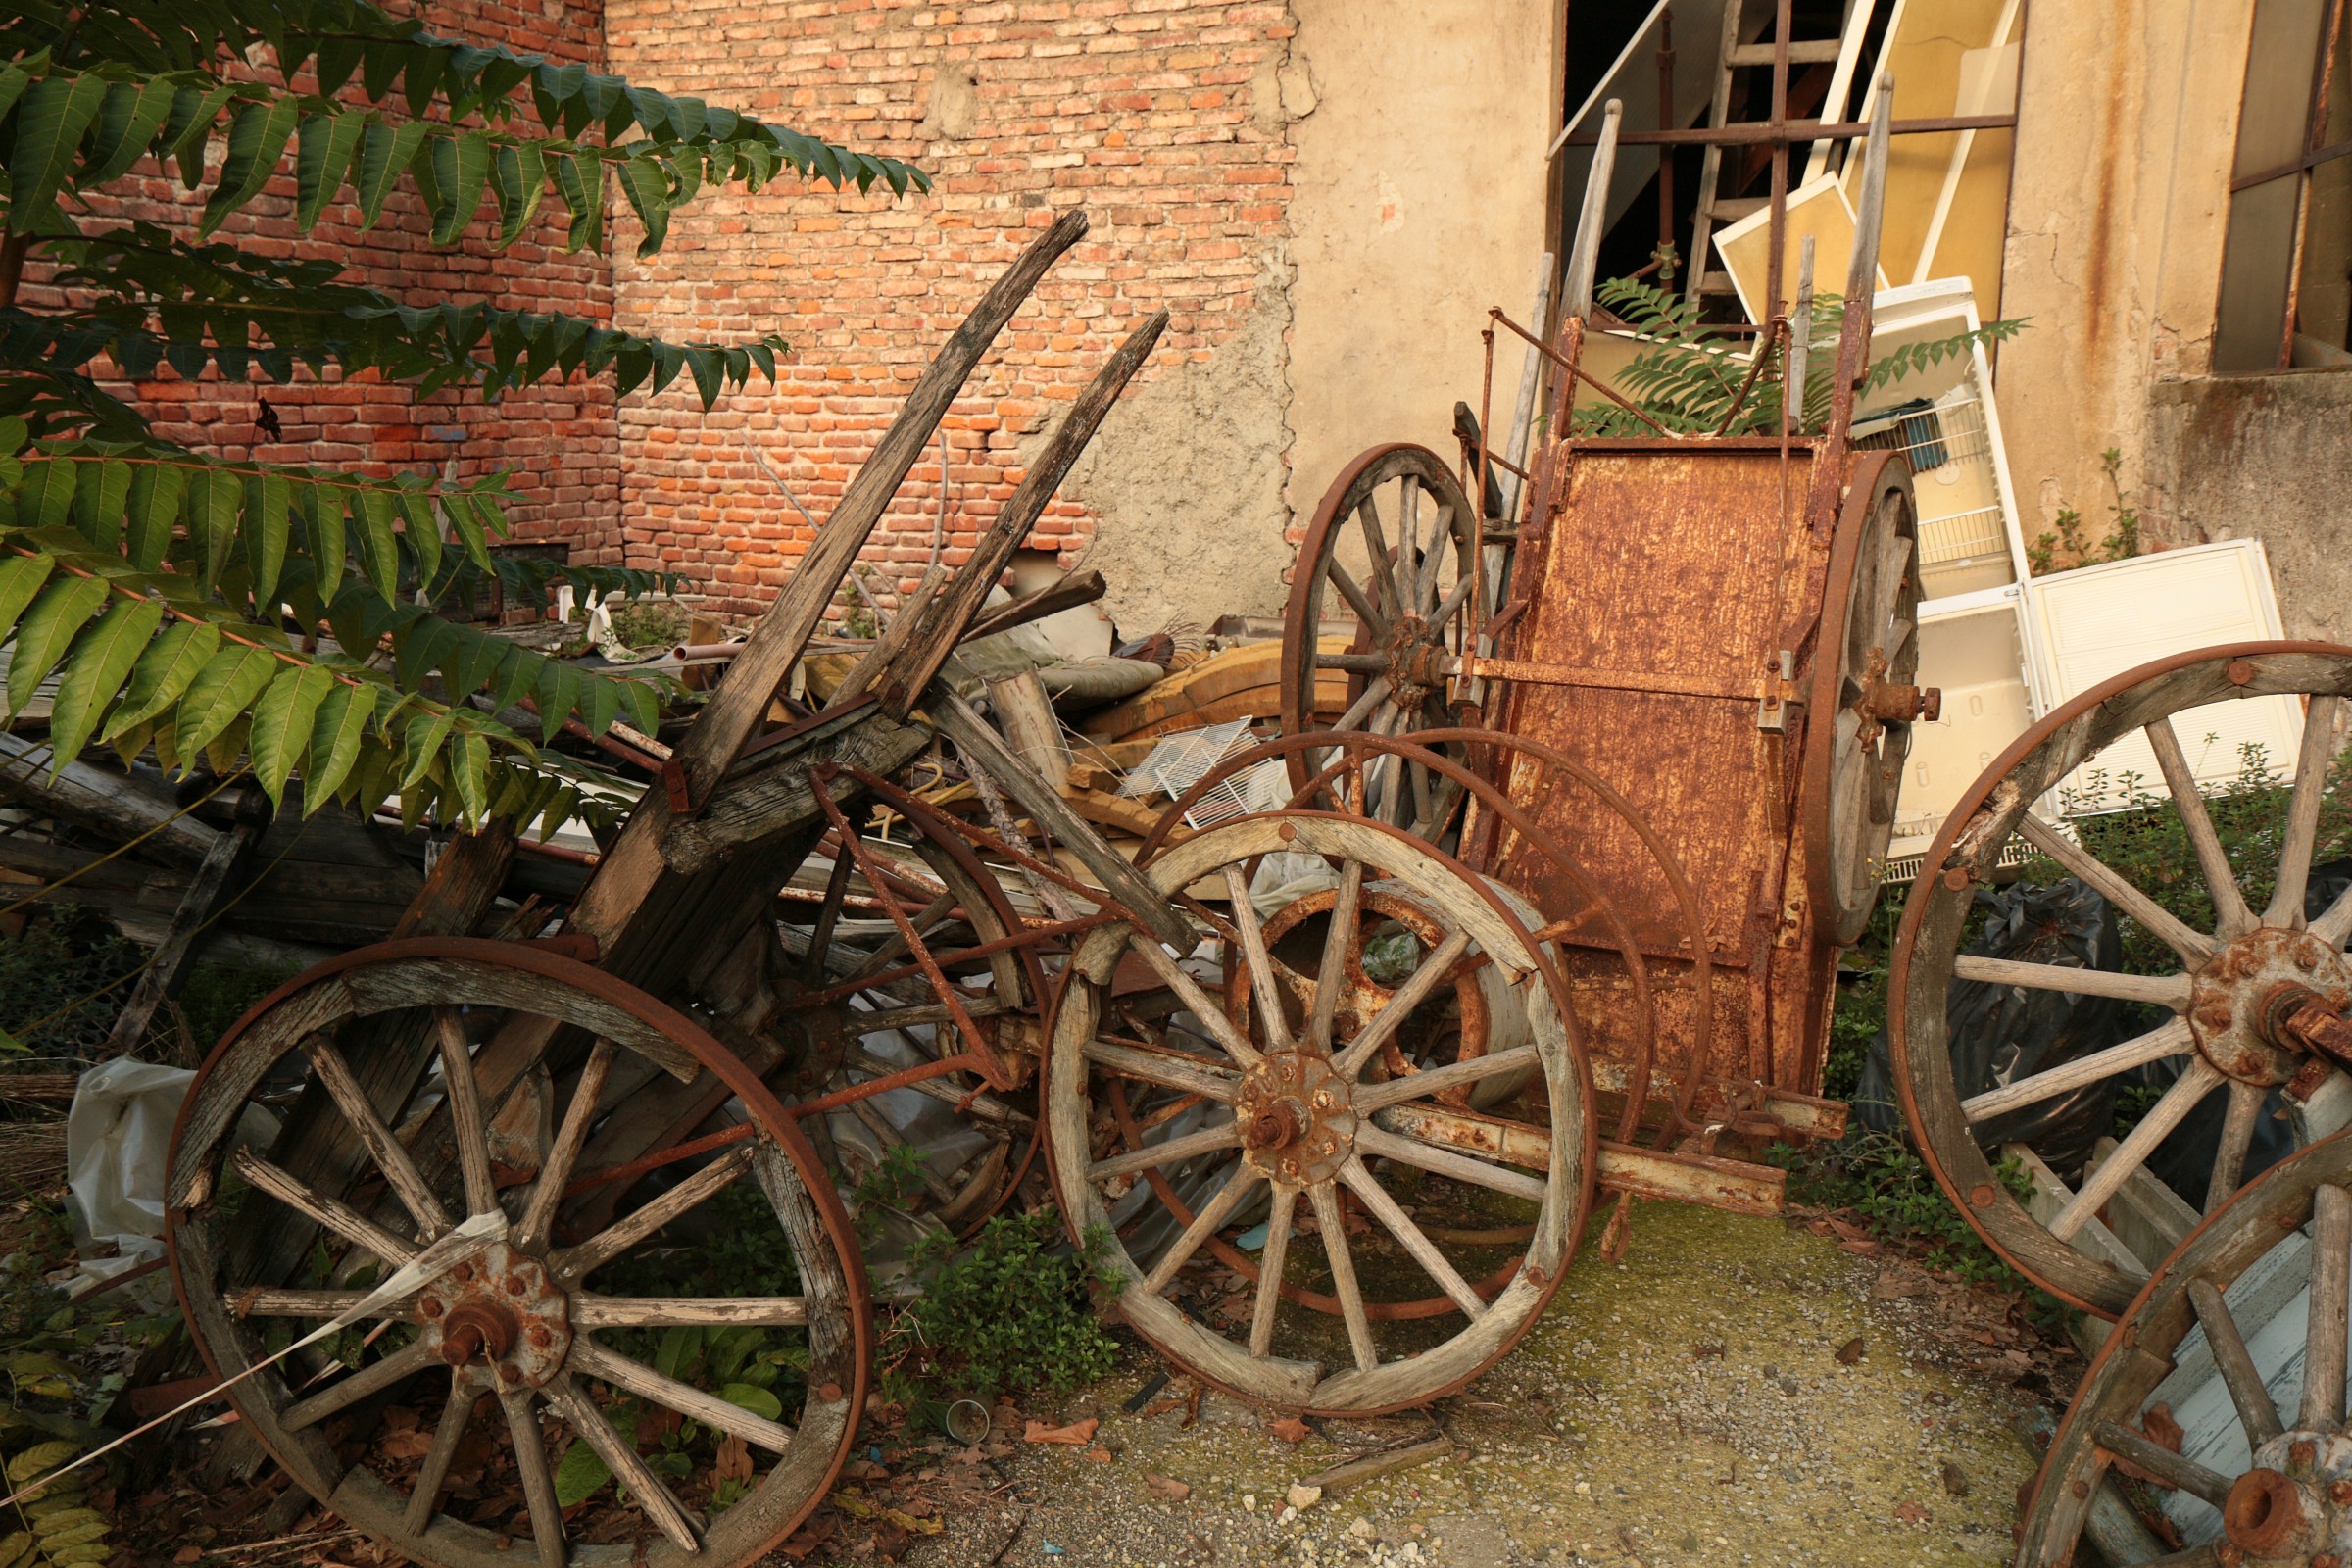 wagons, carts and wheelbarrows...